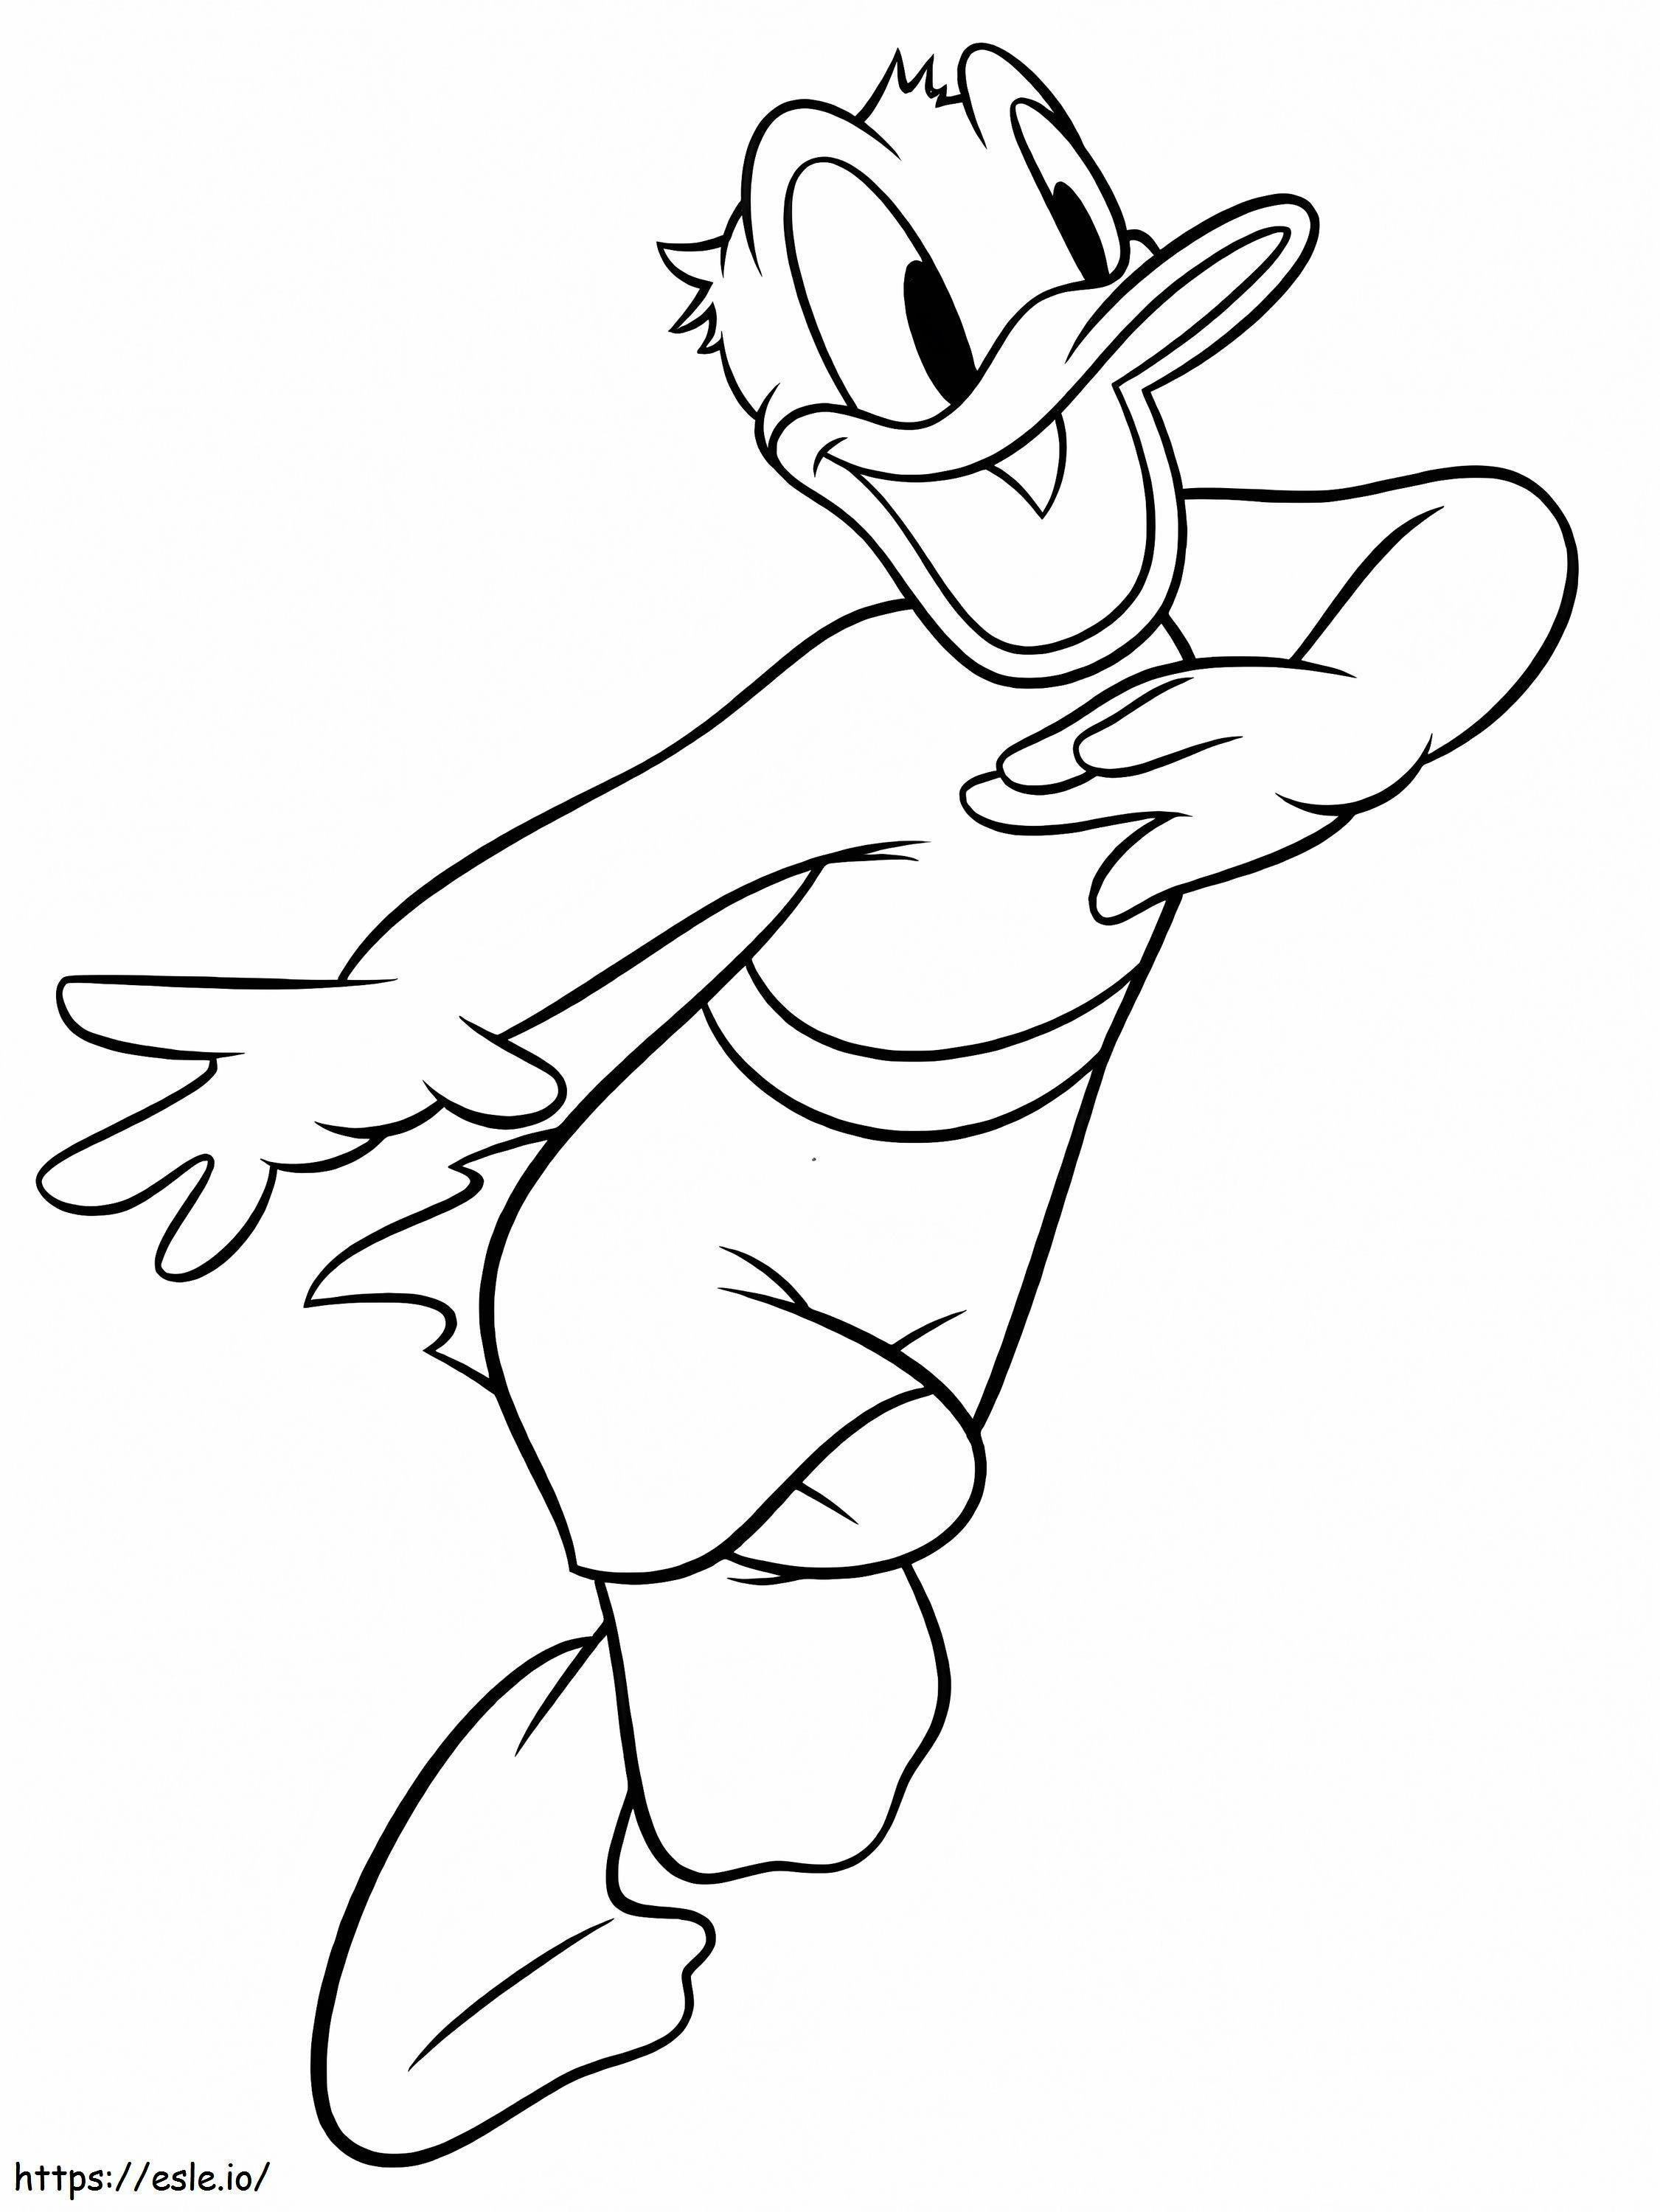 Coloriage Donald Duck Qui Court à imprimer dessin